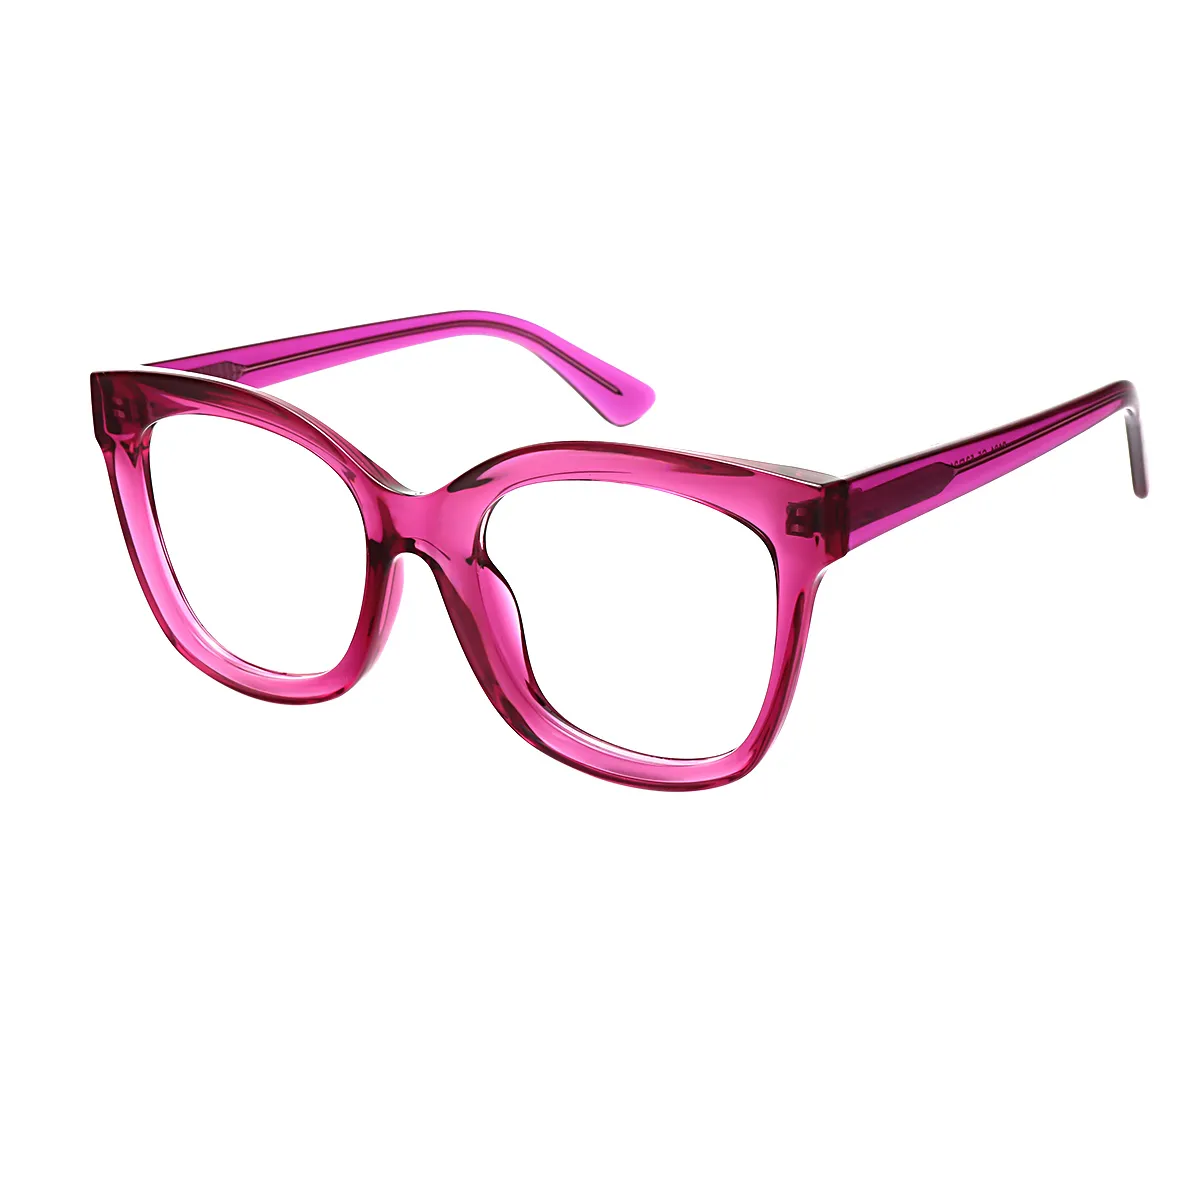 Classic Cat-eye Black Glasses for Women